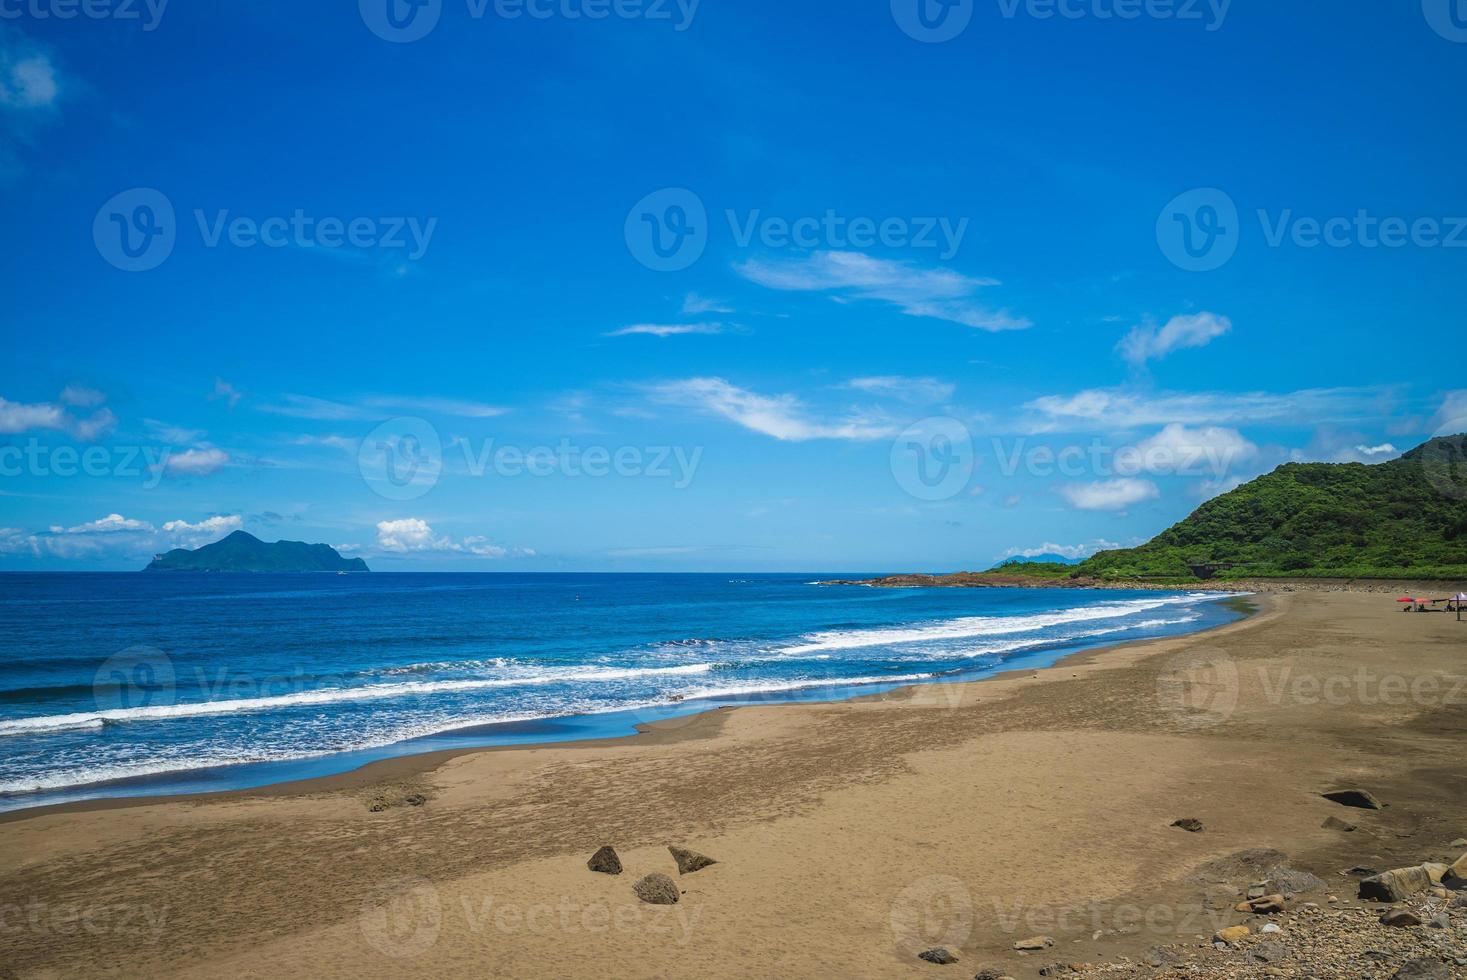 Scenery of Honeymoon Bay and Gueishan Island in Yilan, Taiwan photo